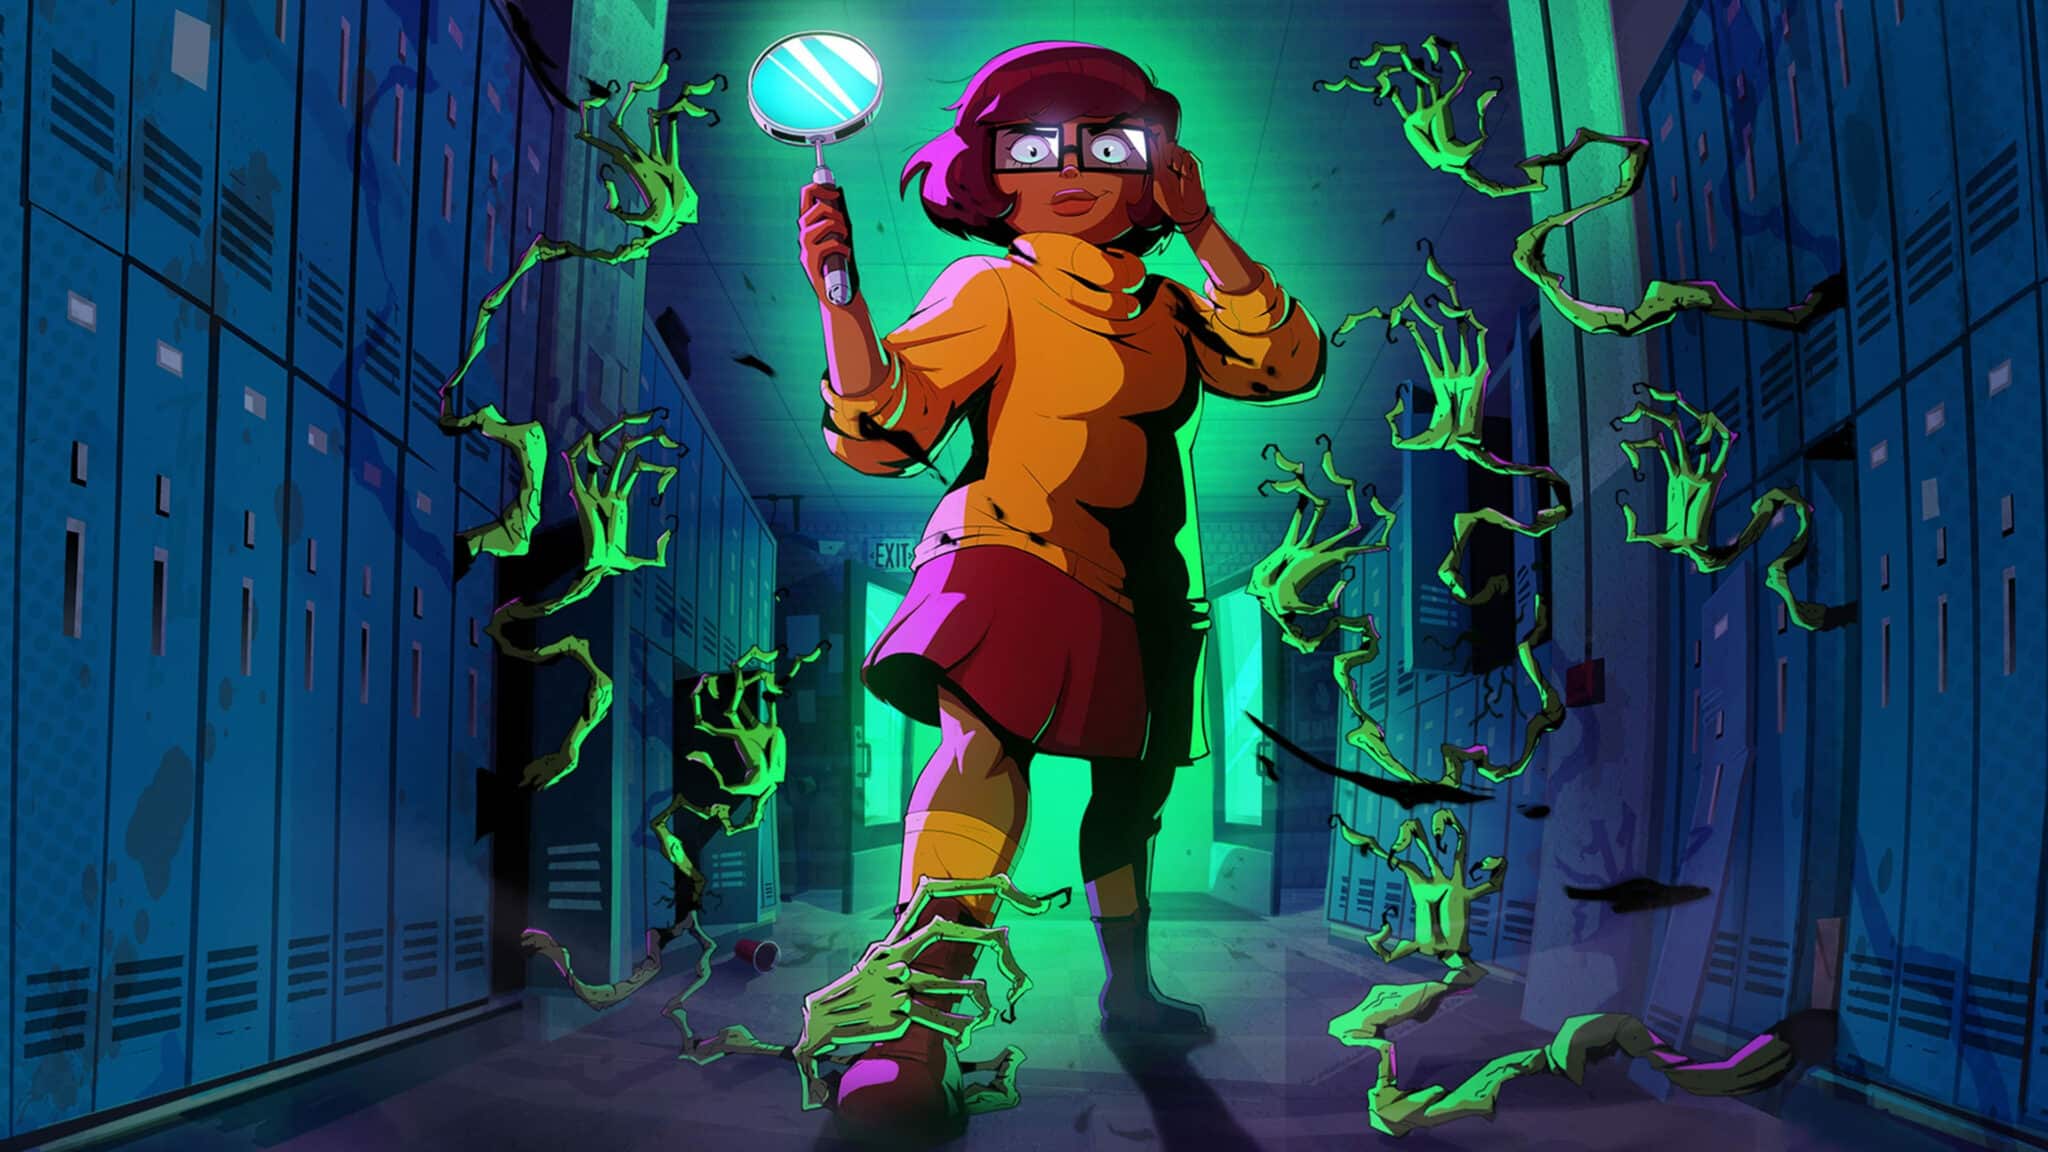 Novo desenho de 'Scooby-Doo' indica que Velma é lésbica